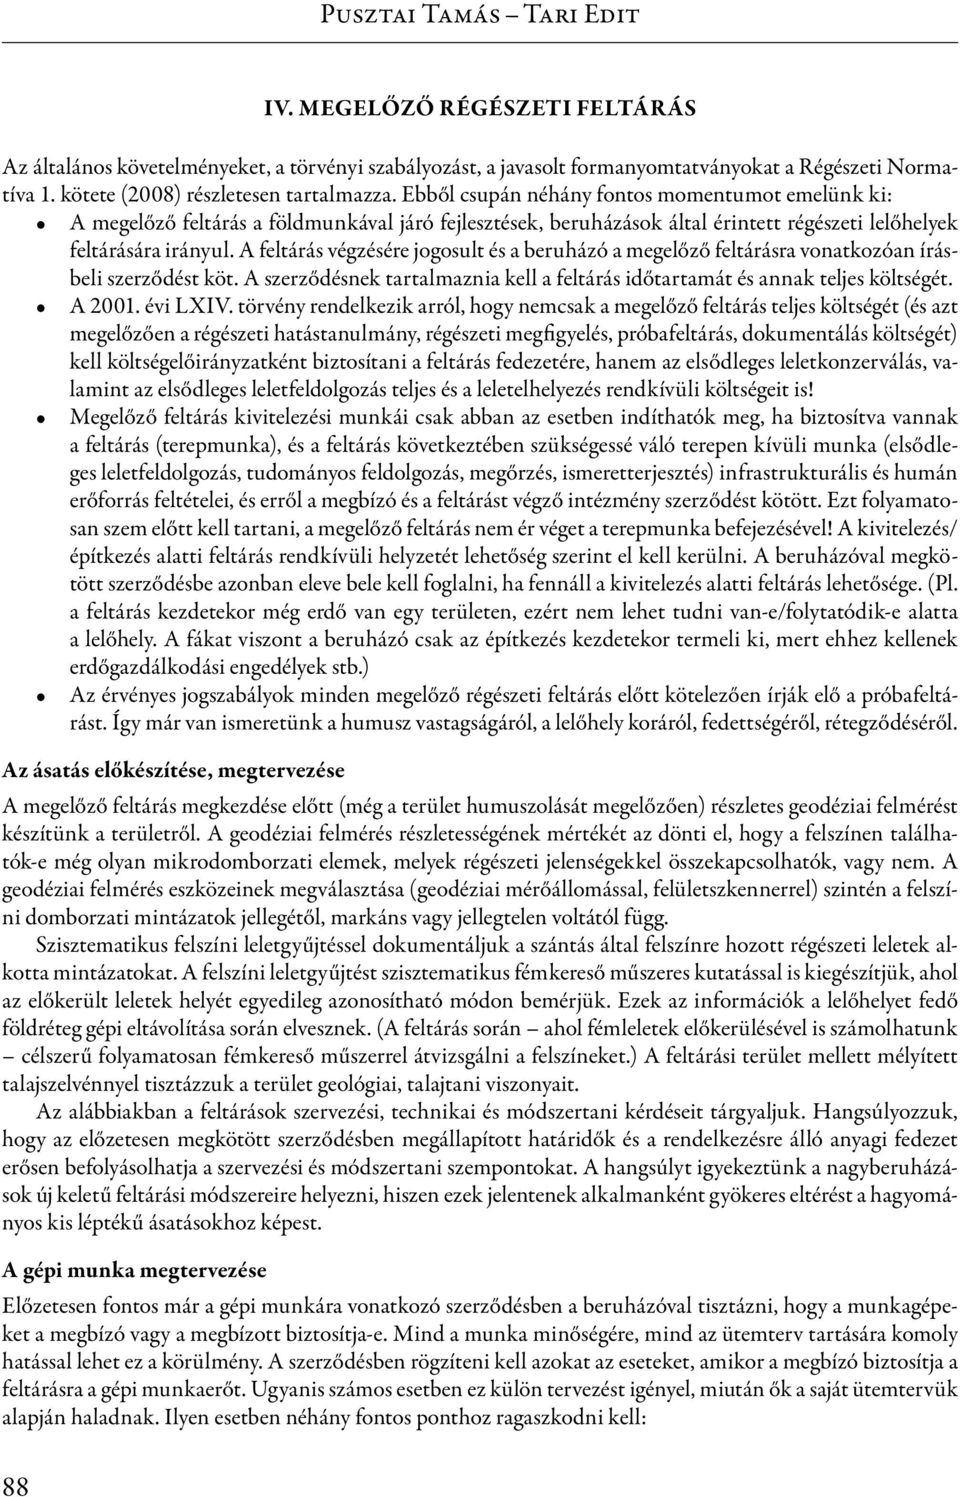 Pusztai Tamás Tari Edit 2.1. Mentő, próba és megelőző régészeti feltárás -  PDF Ingyenes letöltés